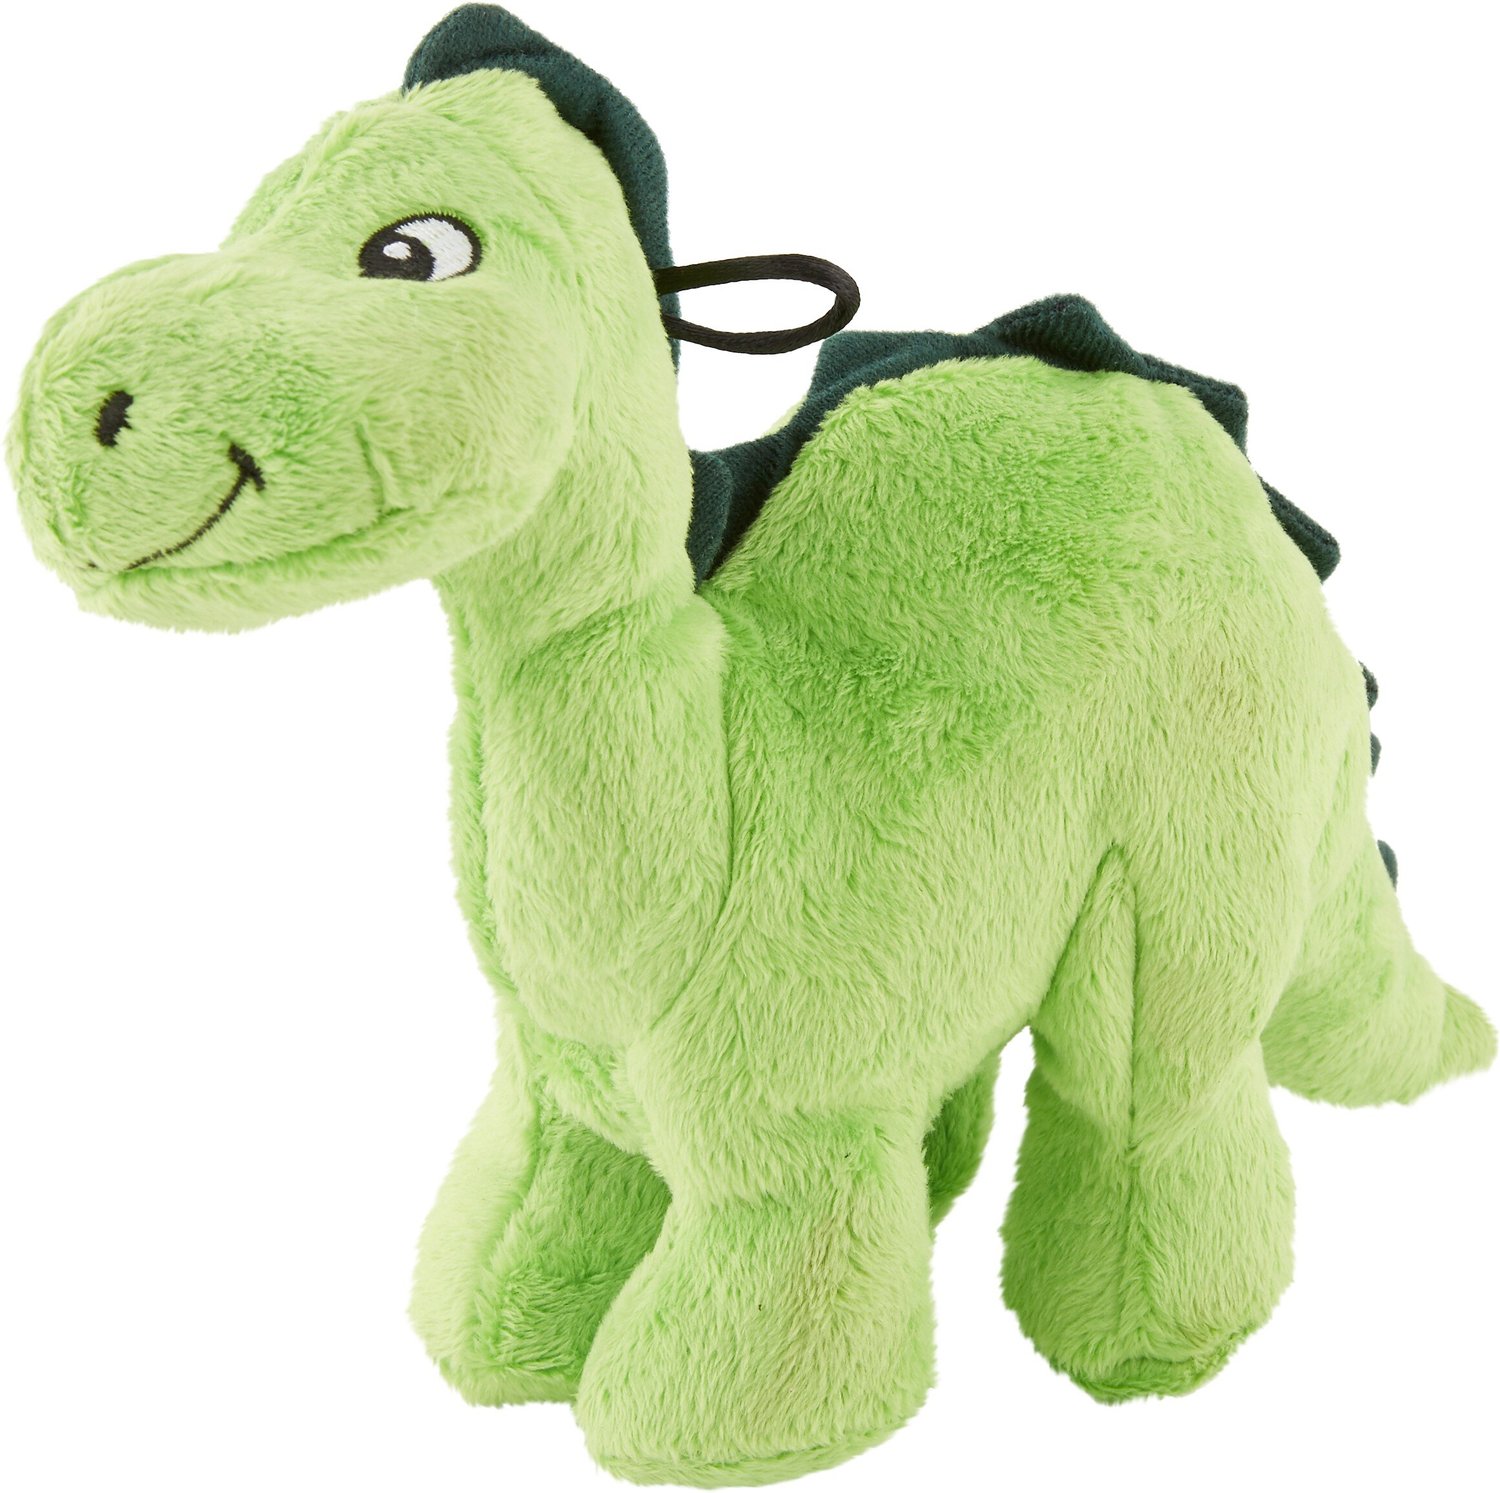 green dog plush